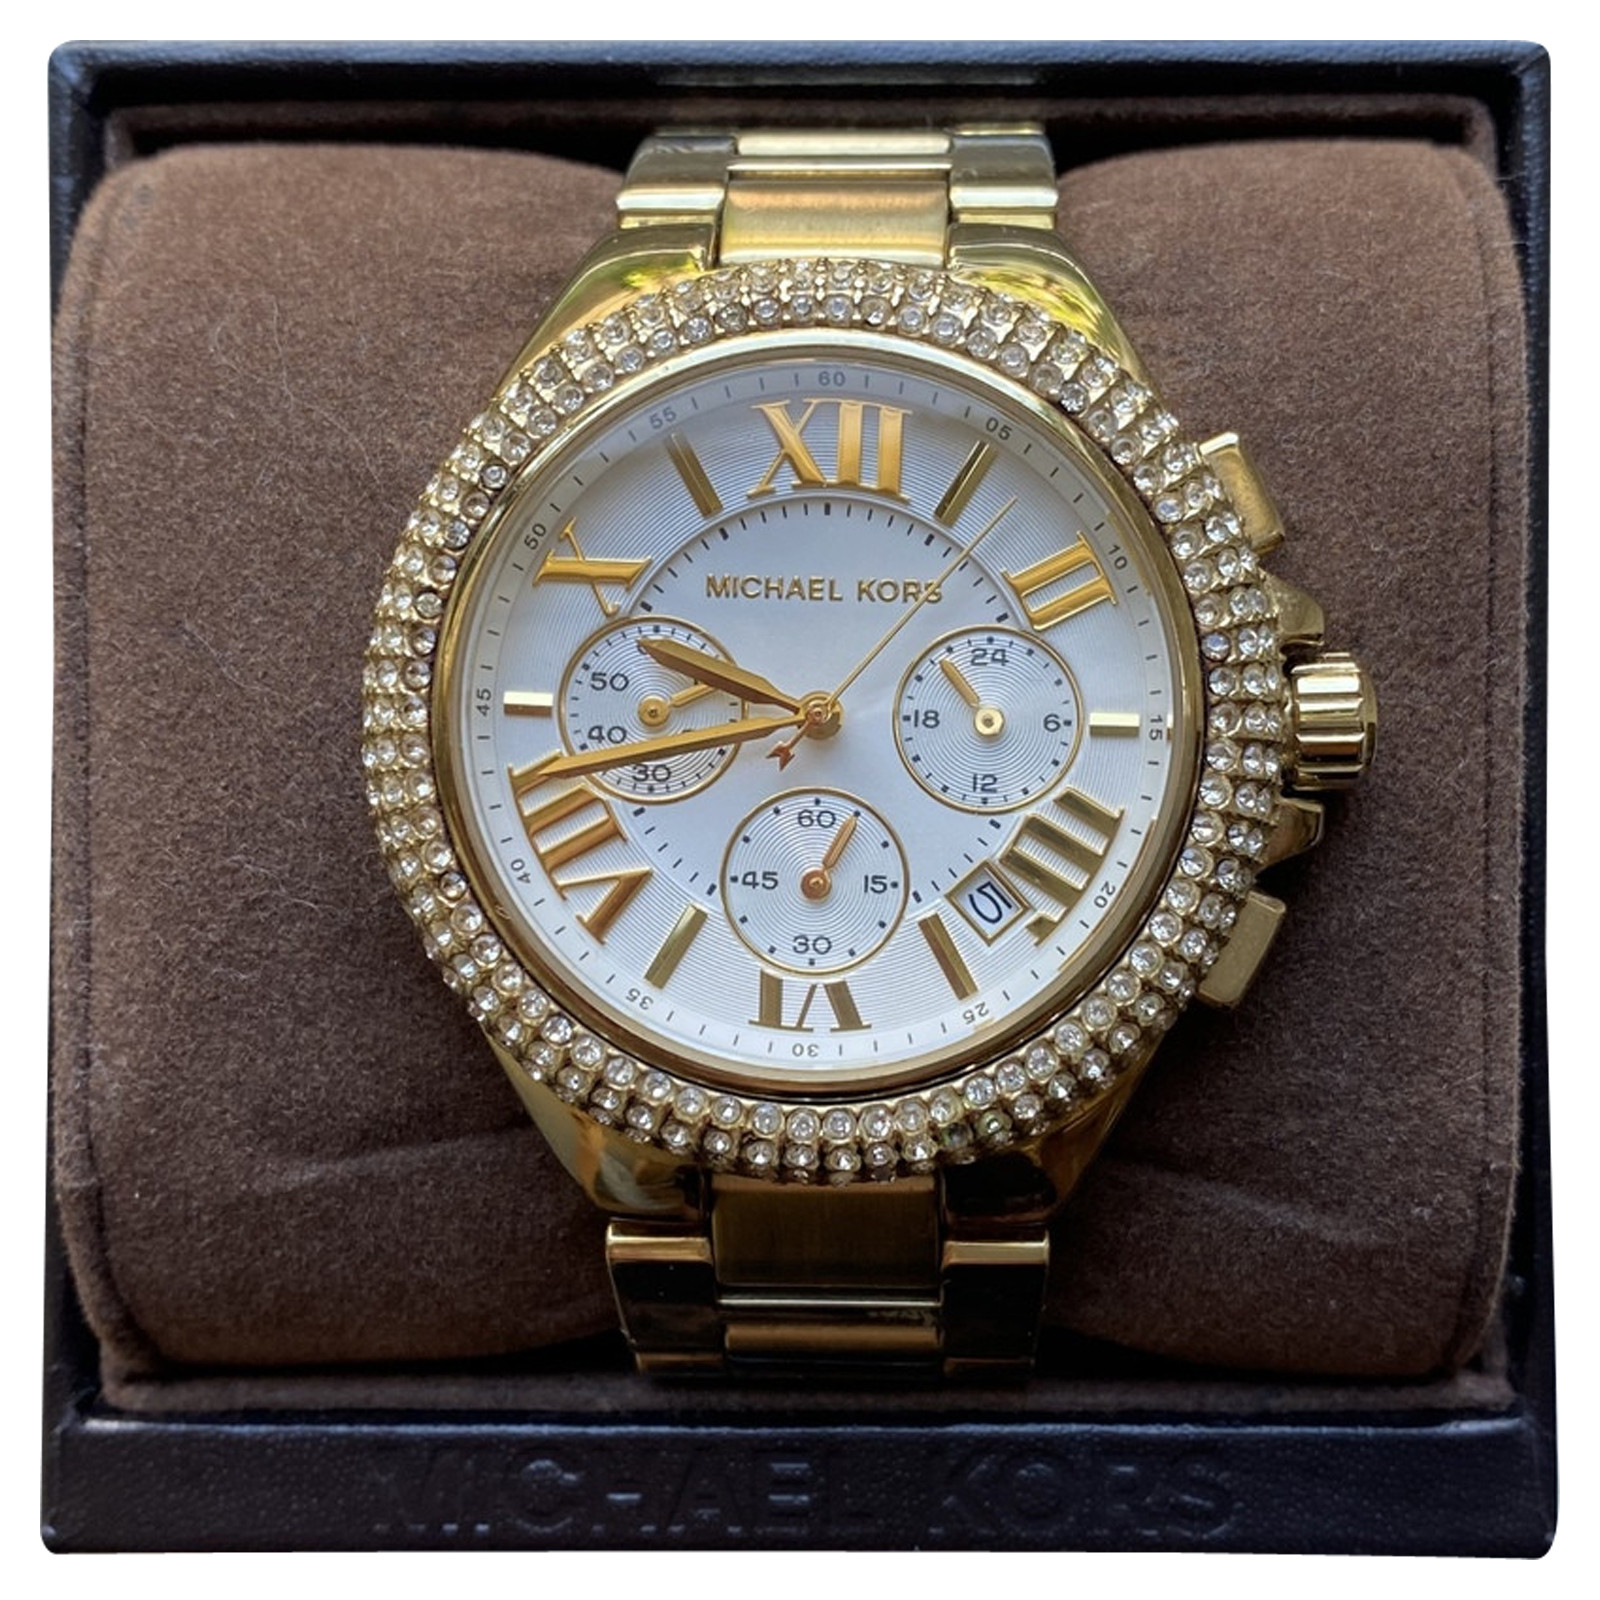 MICHAEL KORS Women's Armbanduhr aus Stahl in Gold